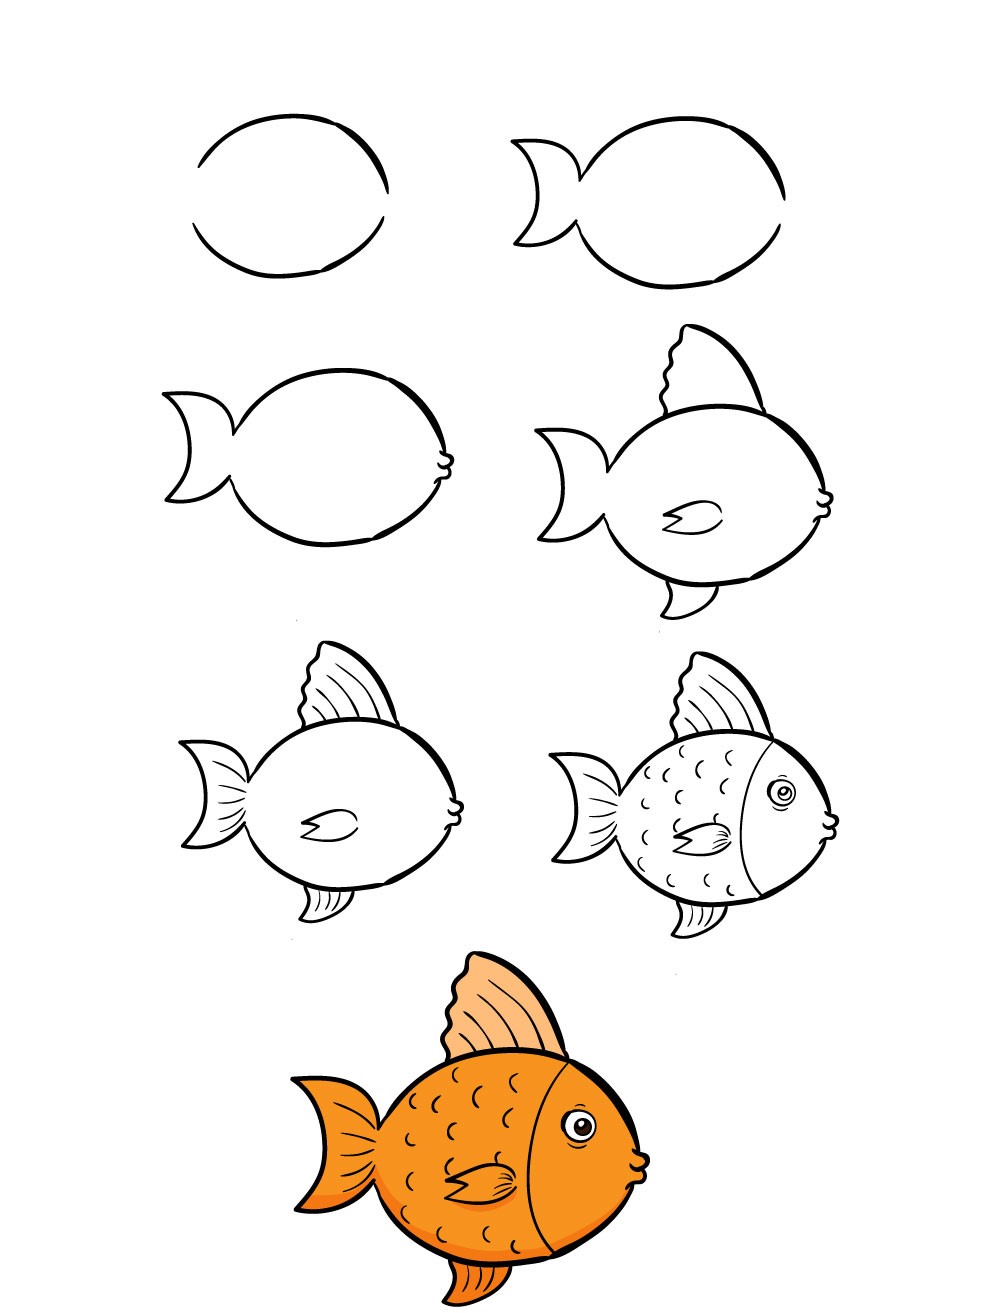 Việc vẽ một con cá không còn là điều gì quá khó khăn nữa. Nếu bạn đang tìm kiếm cách vẽ cá siêu dễ dàng và đẹp, hãy xem hình ảnh này để được hướng dẫn chi tiết từ những chuyên gia trong lĩnh vực vẽ tranh.